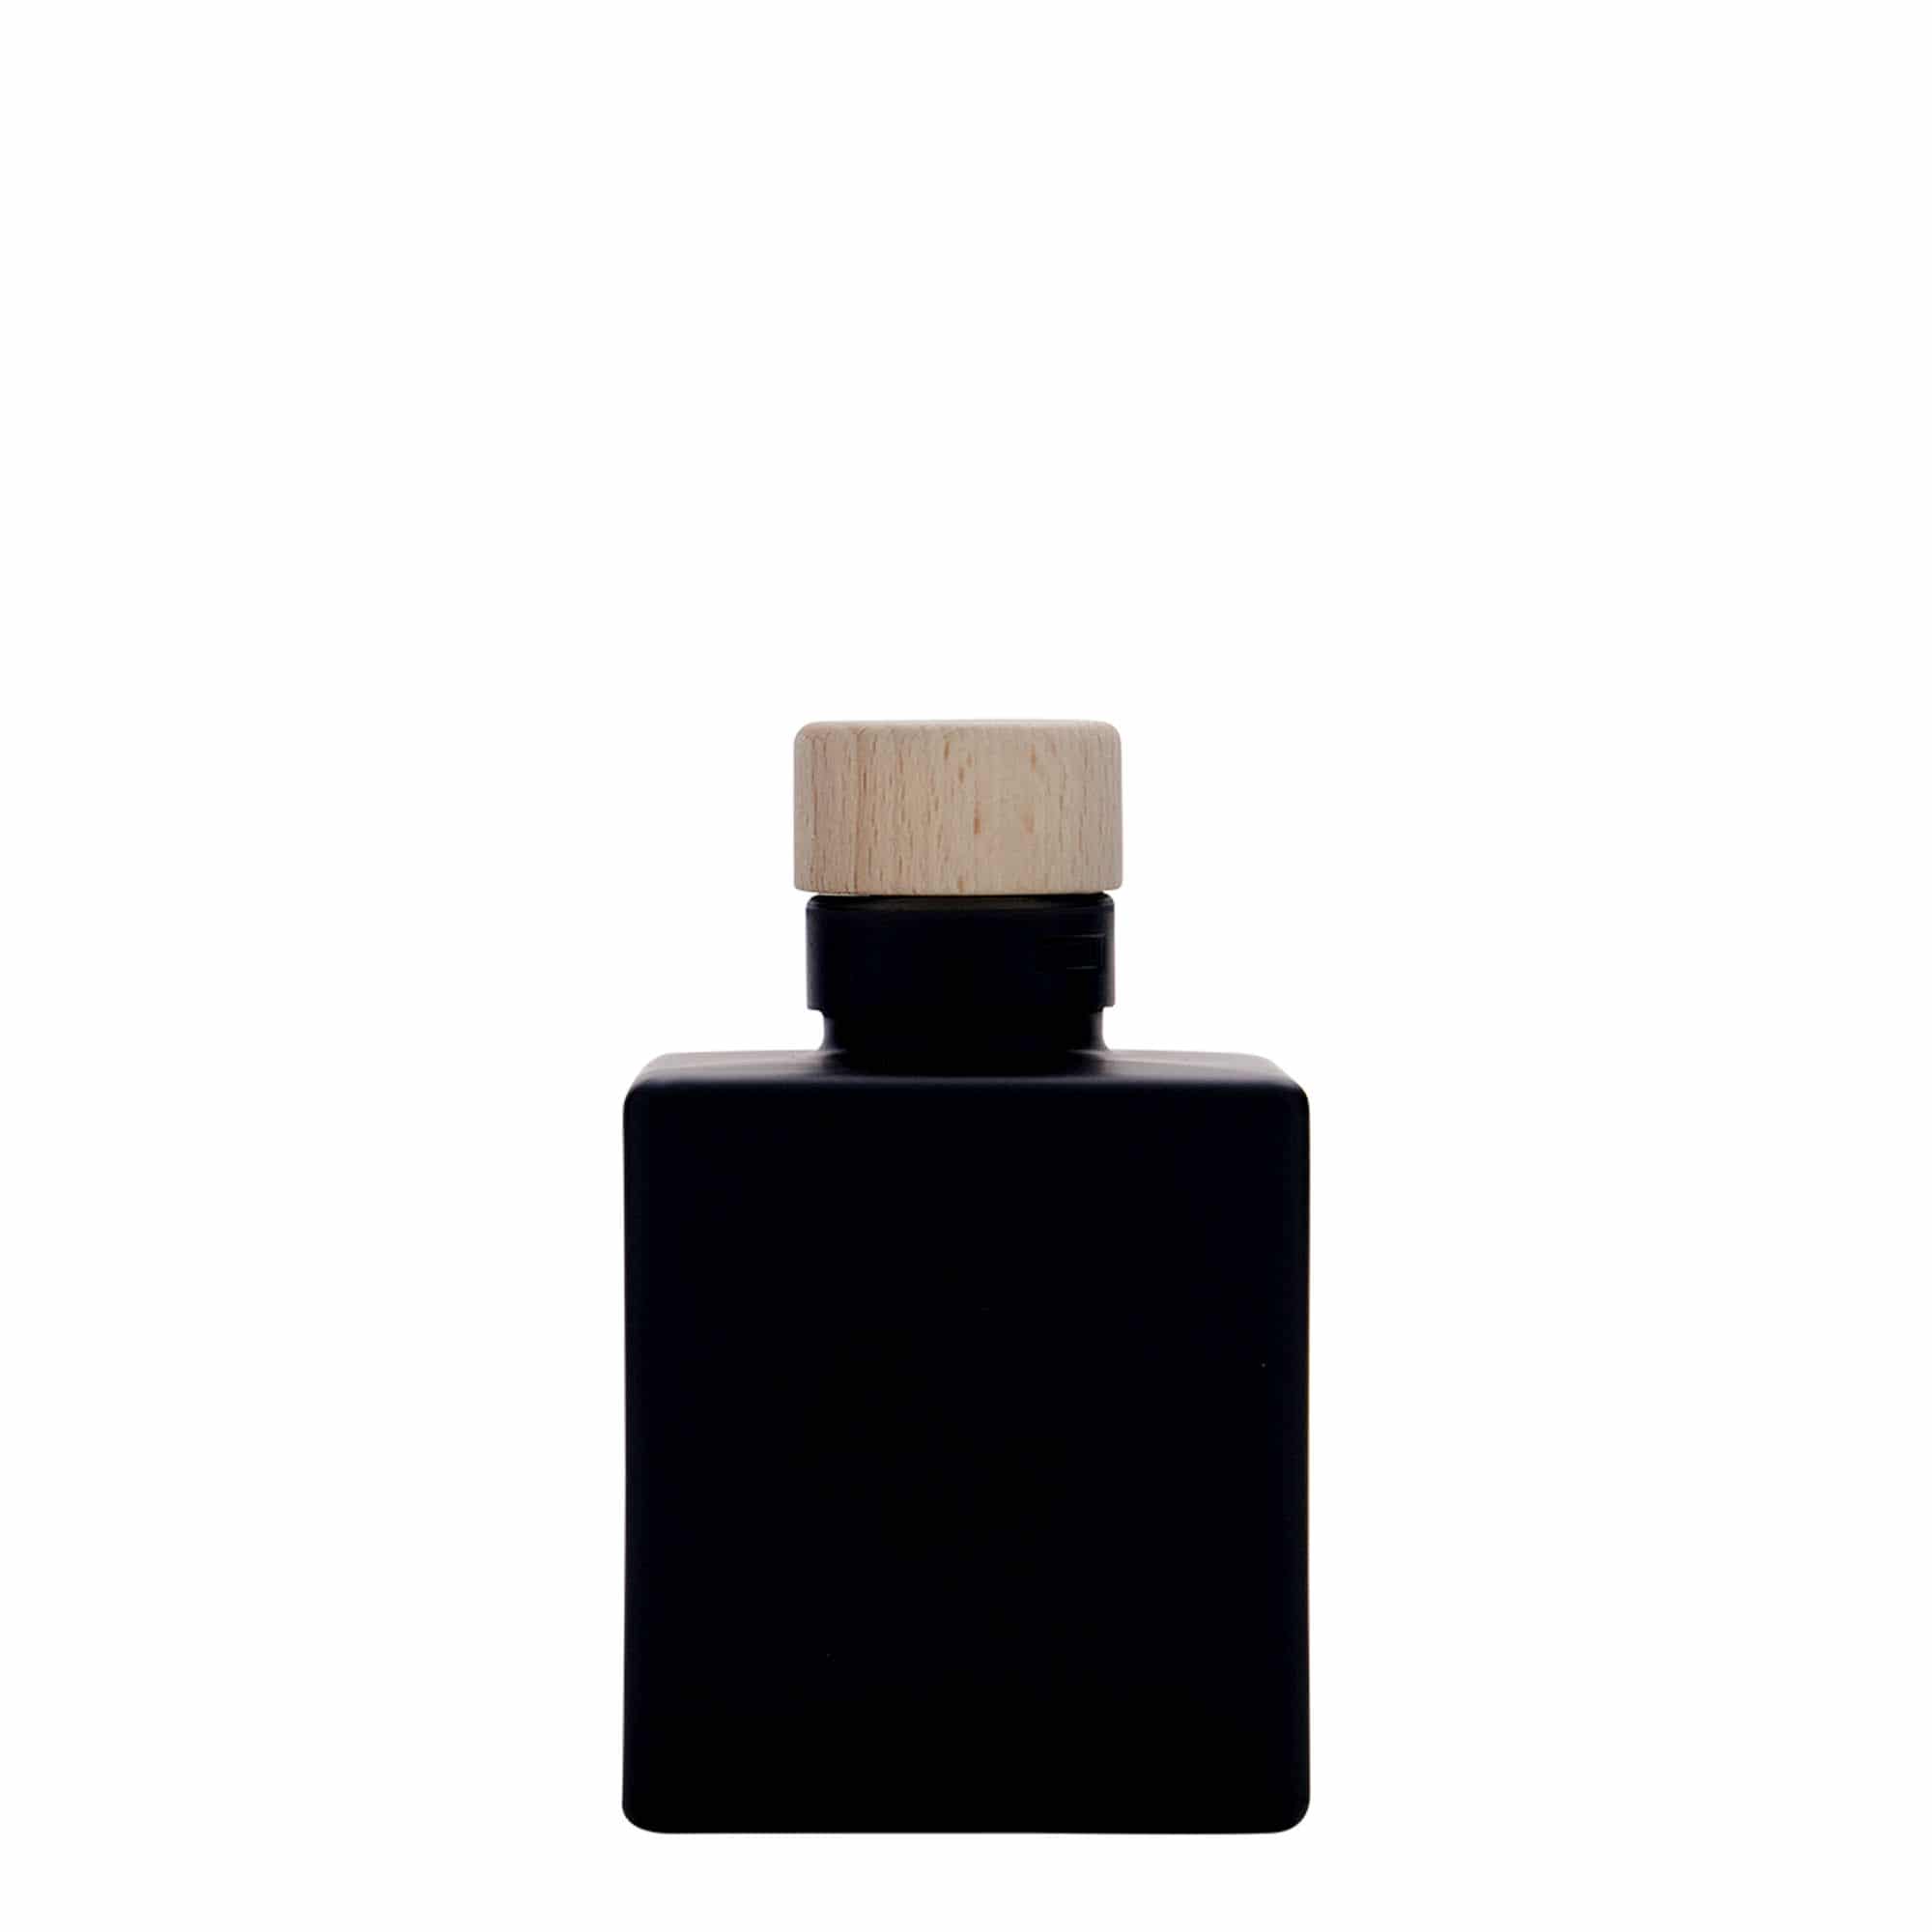 Skleněná lahev 100 ml 'Cube', čtvercová, černá, uzávěr: korek